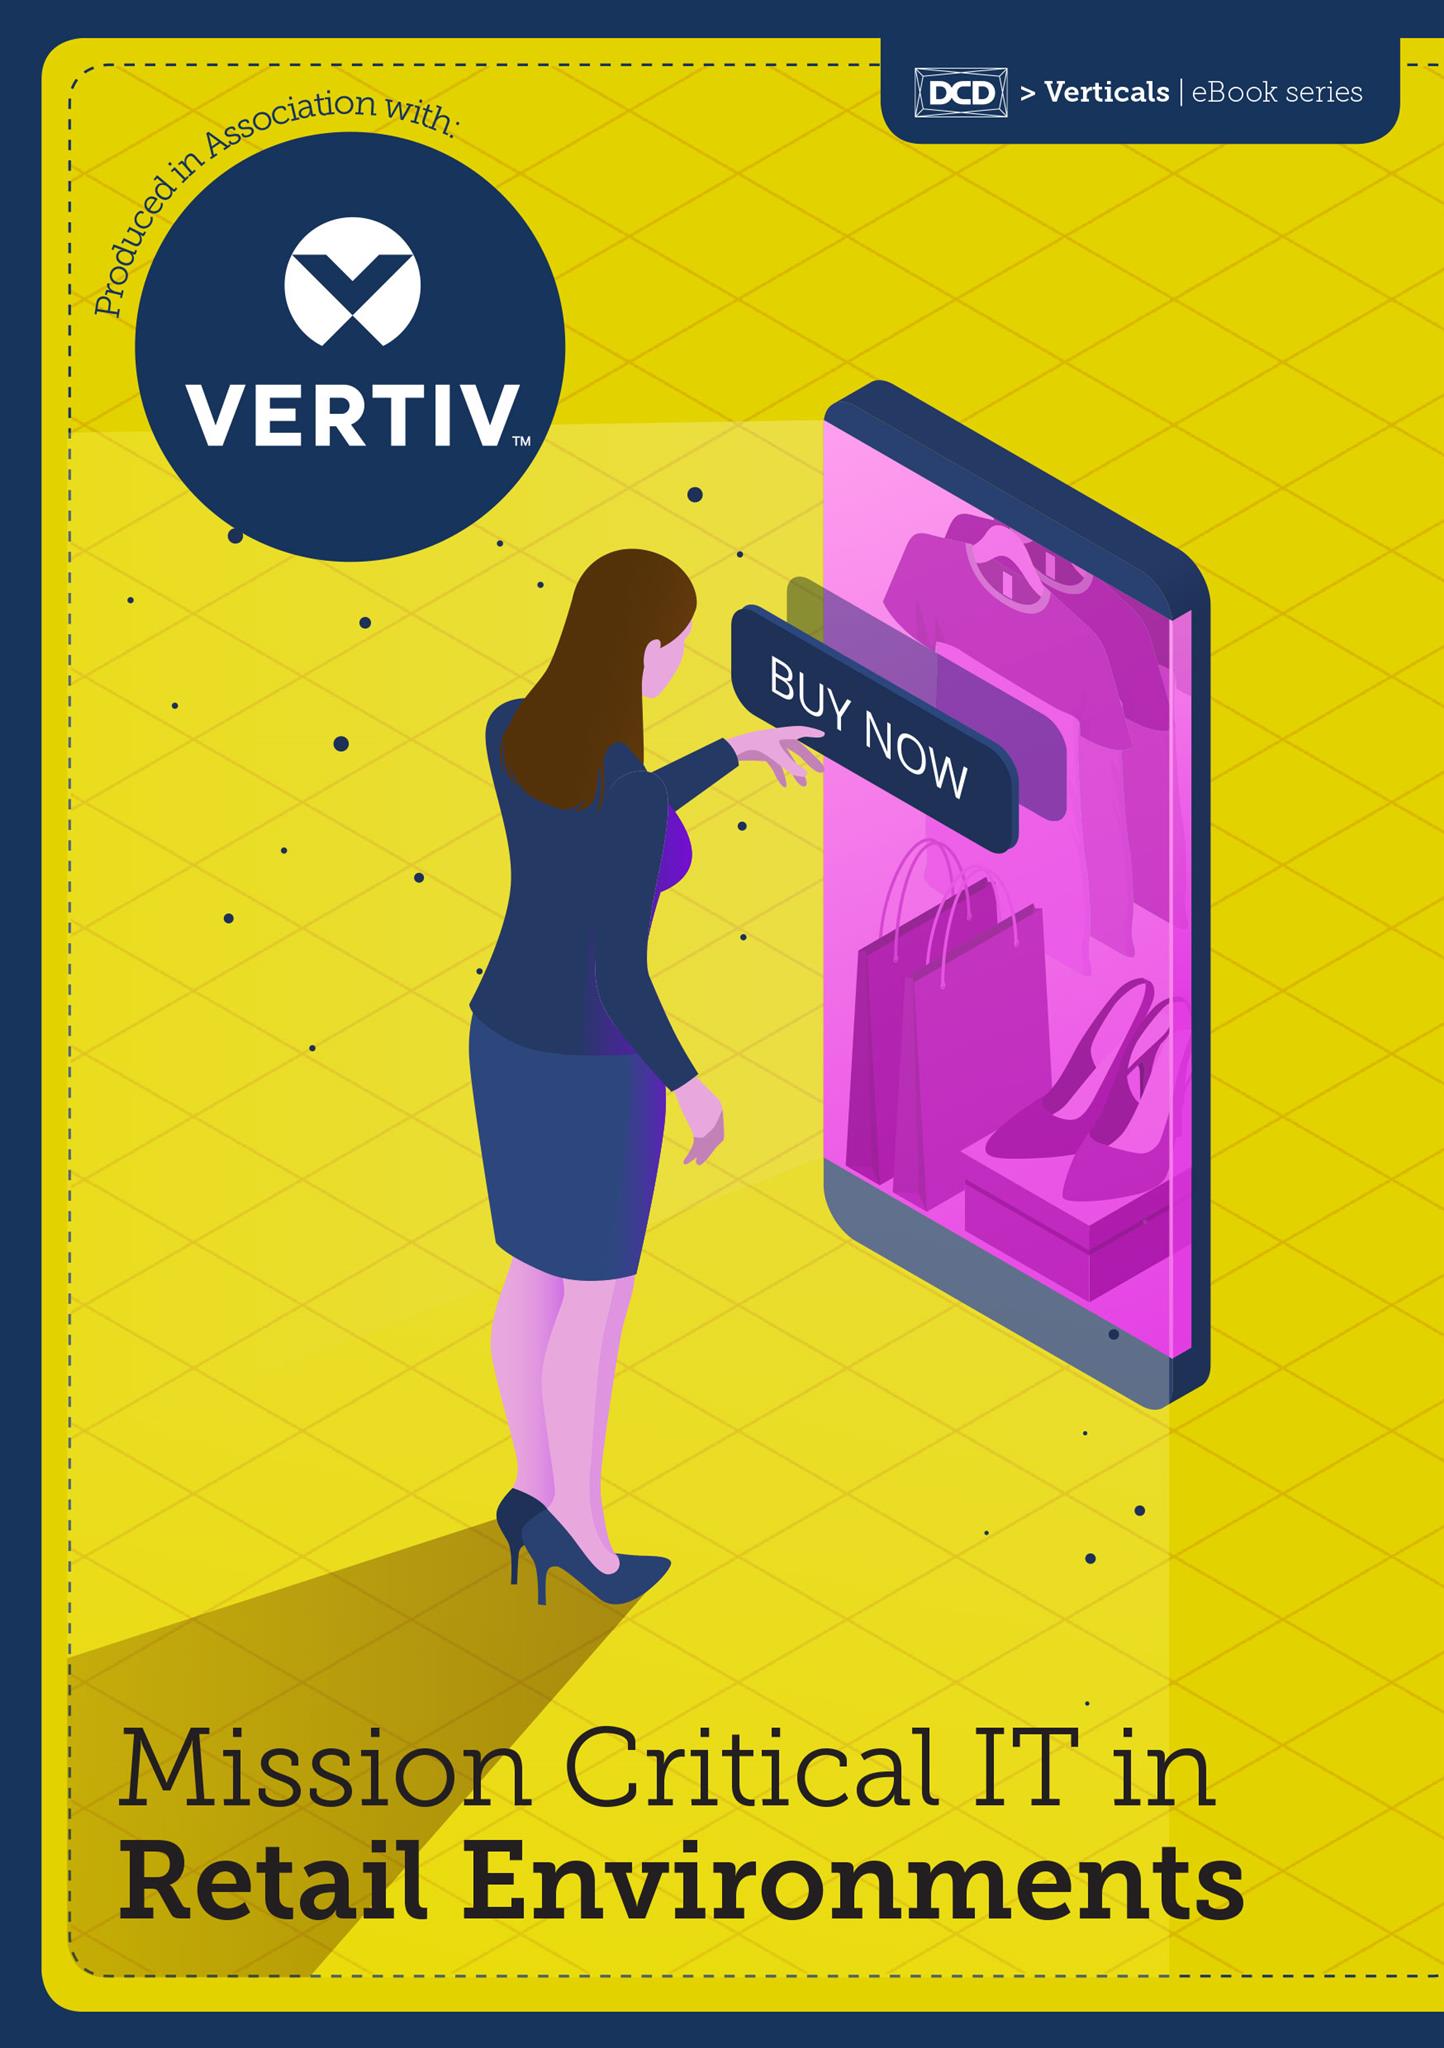 Vertiv_ebook_v1-1.jpg